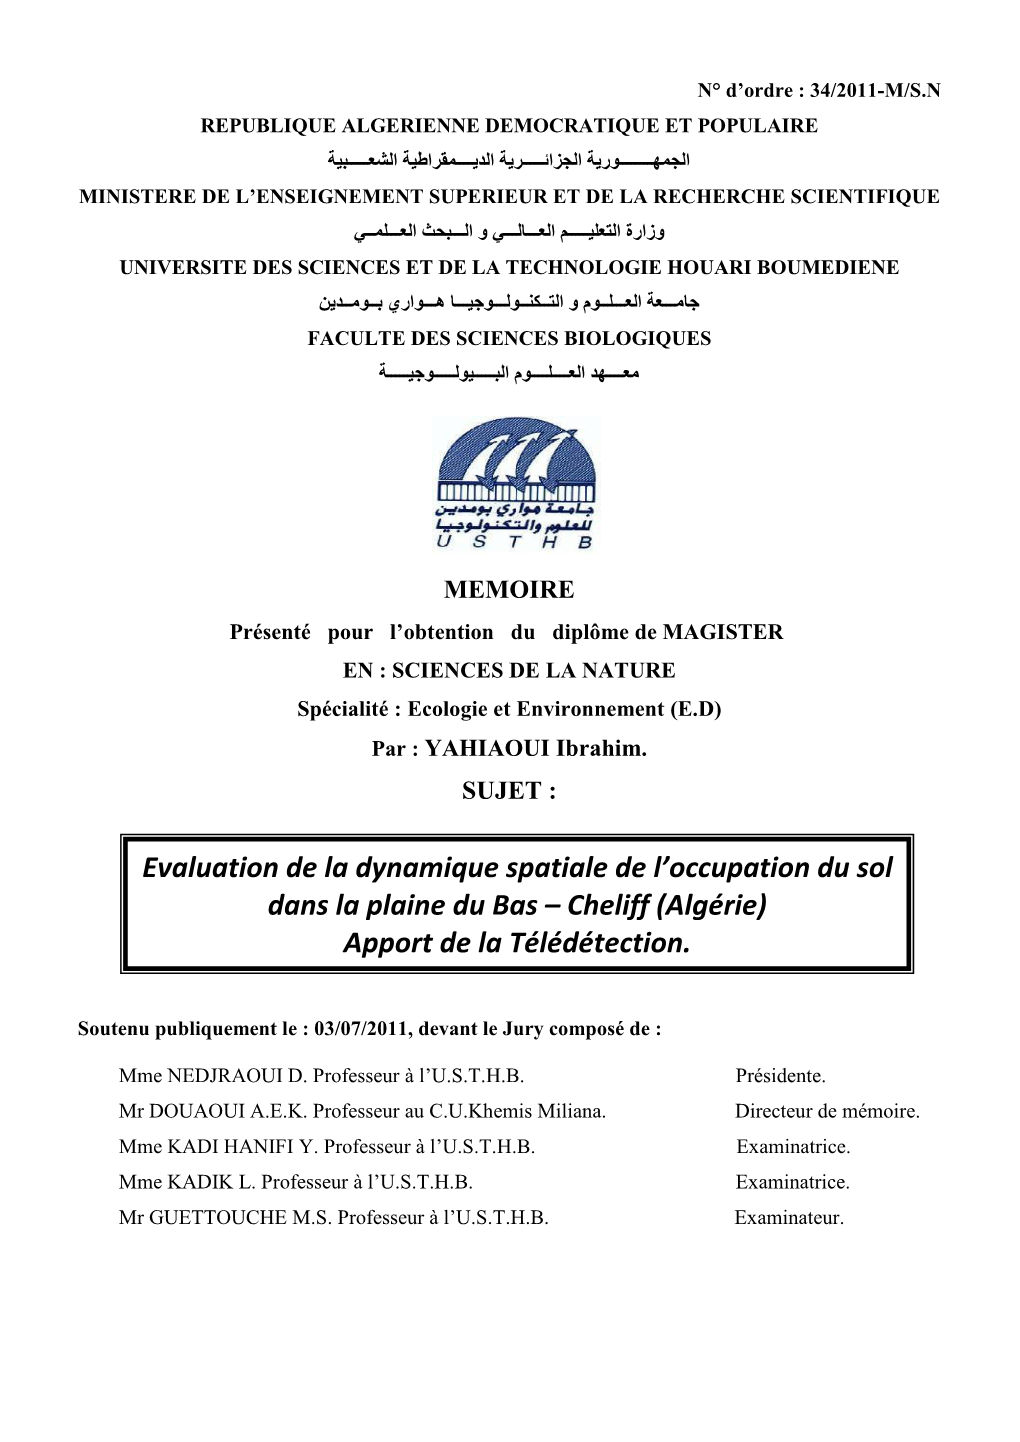 (Algérie). Thèse De Master, Université De Montpellier 2, 54 P